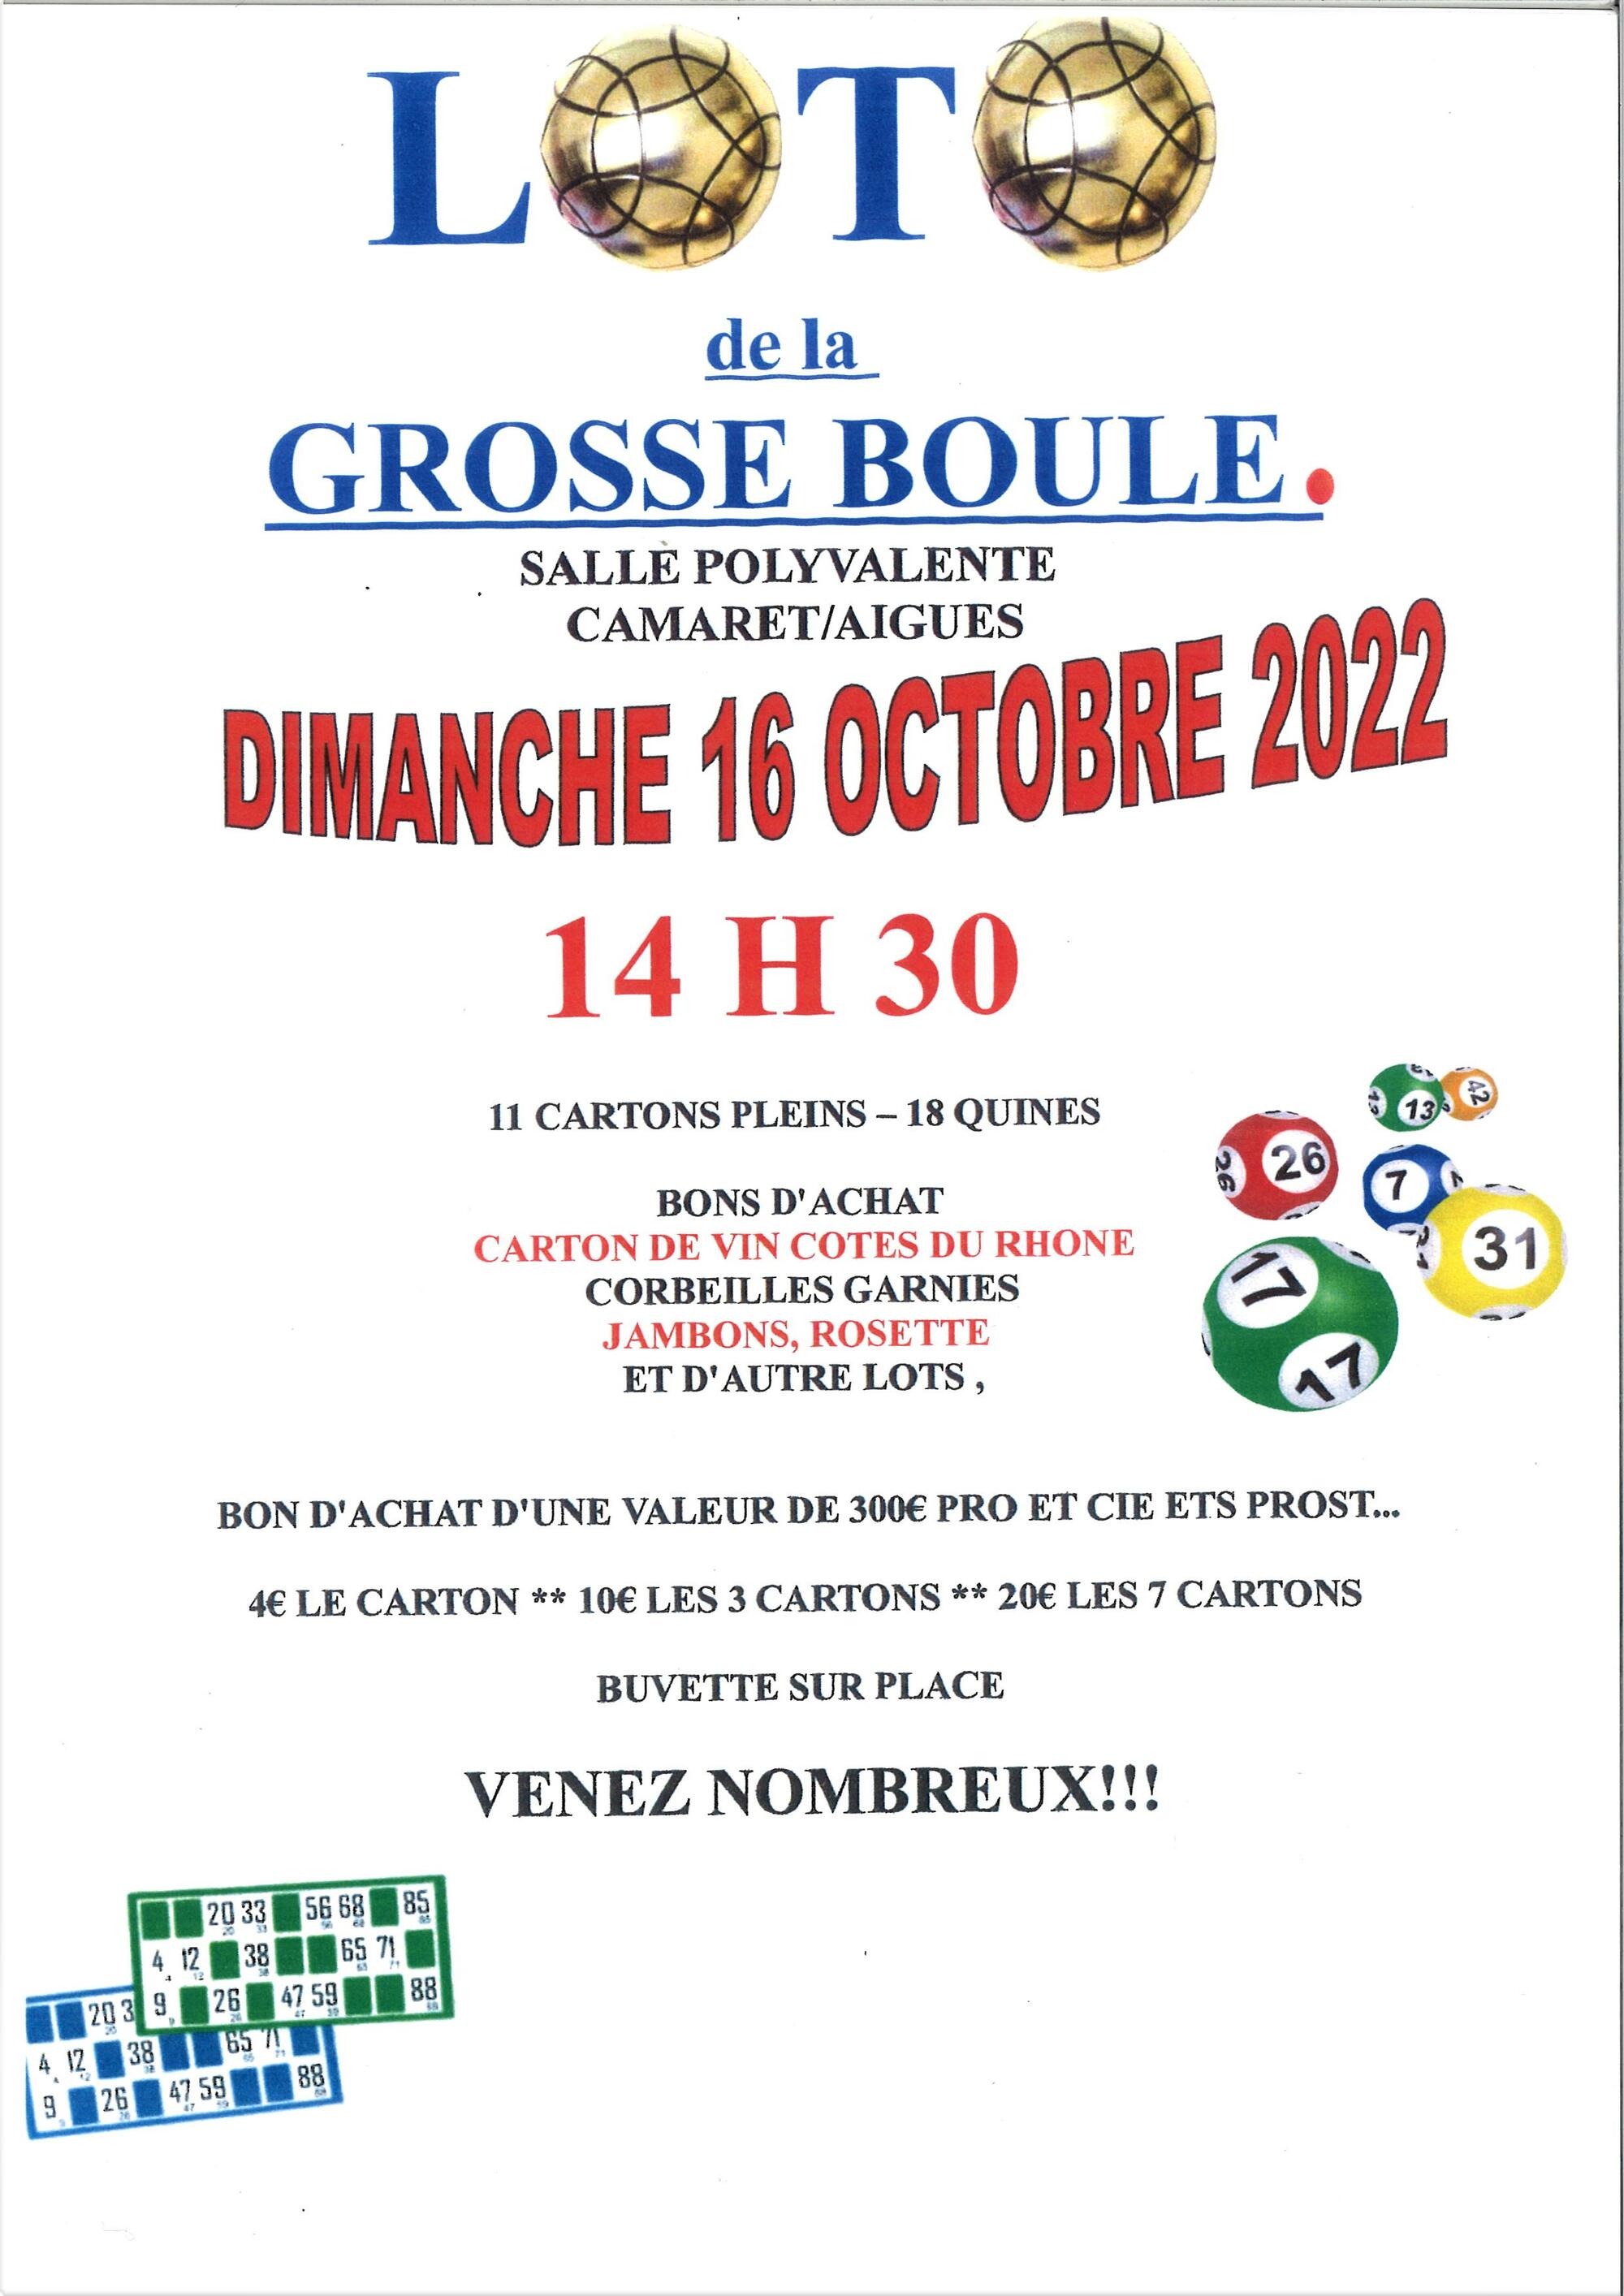 Loto de La Grosse Boule Camarétoise le dimanche 16 octobre 2022 à l'Espace René Roussière